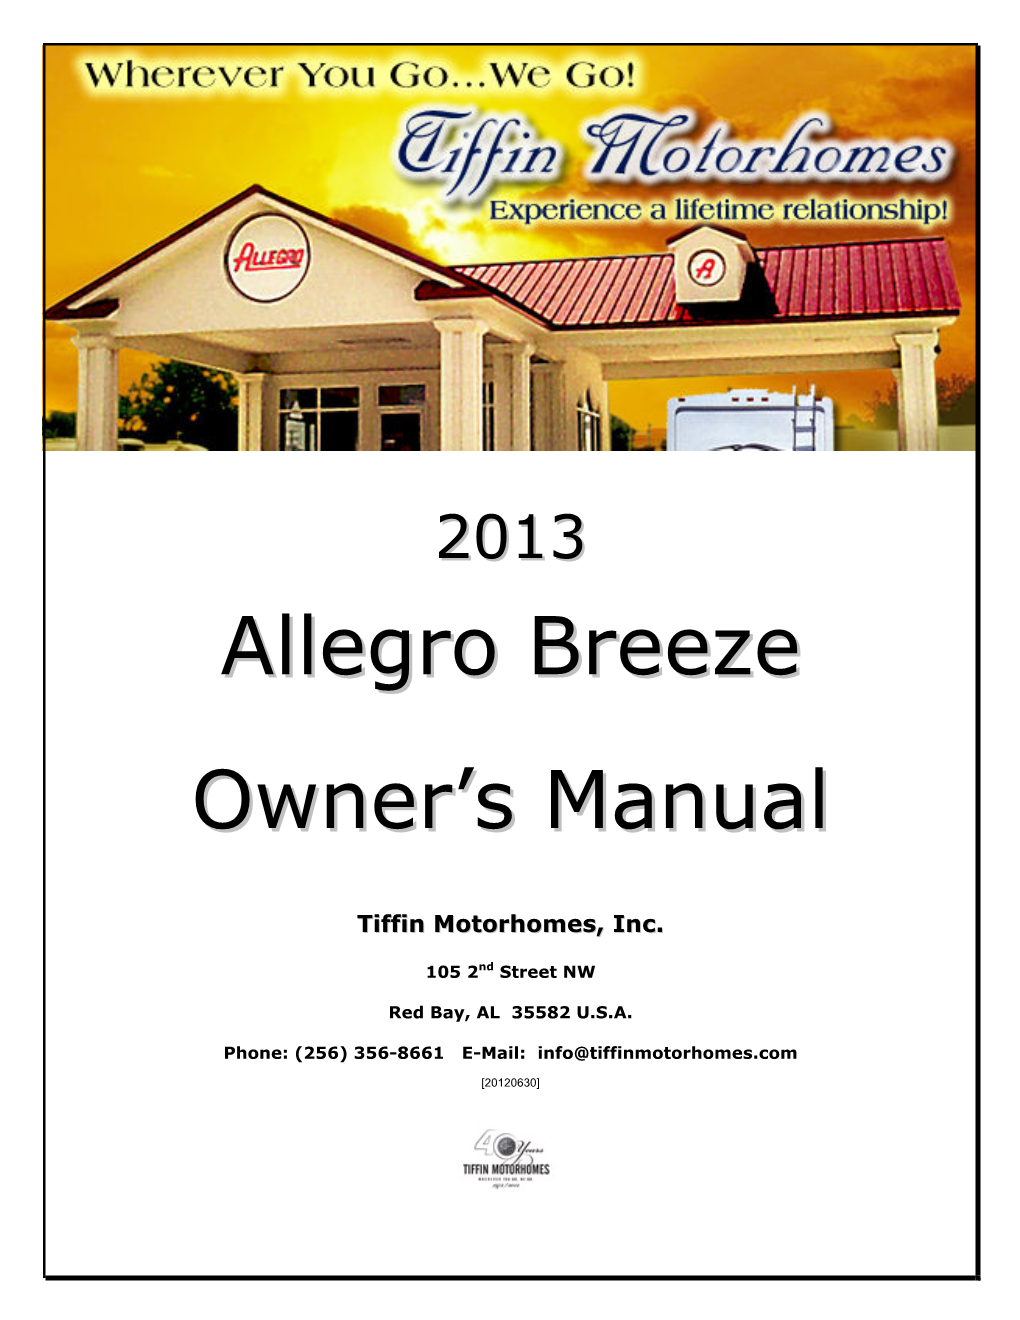 Allegro Breeze Owner's Manual